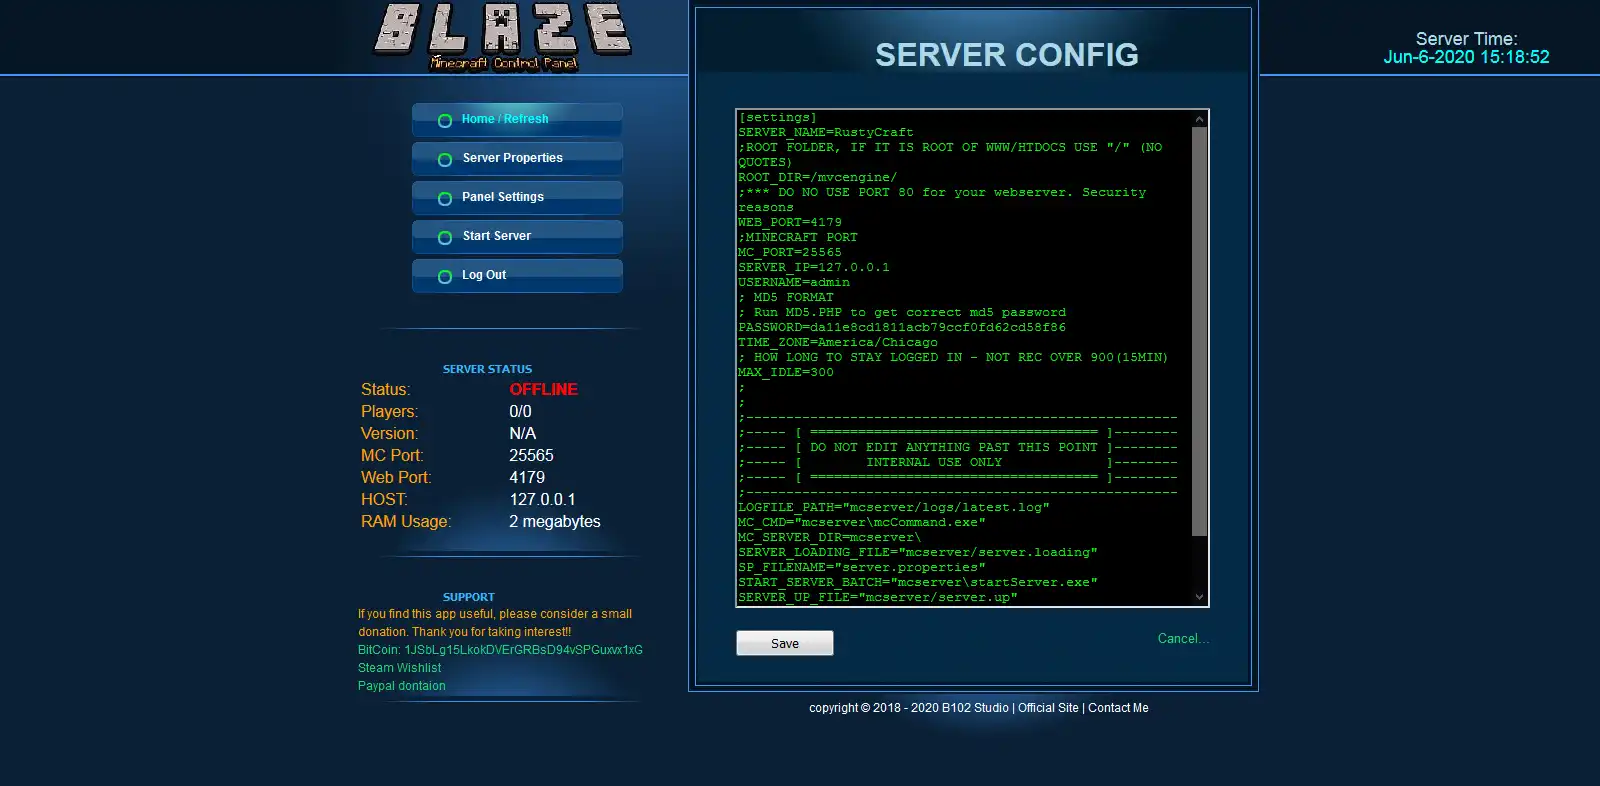 下载 Web 工具或 Web 应用程序 Blaze Minecraft 控制面板，以便在 Windows Online 中通过 Linux Online 在线运行